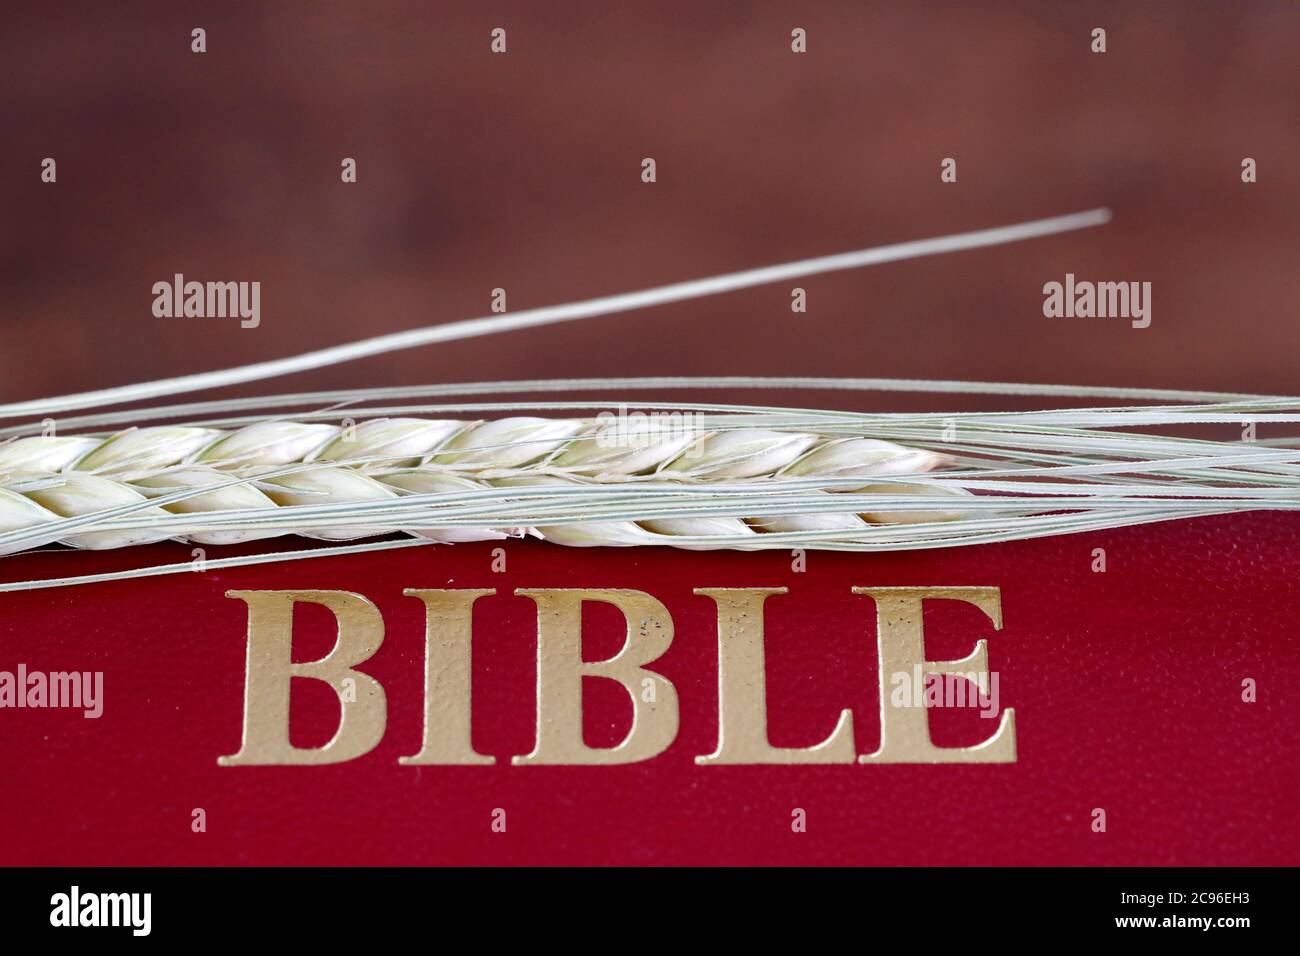 Le livre sacré de la Bible et l'oreille de blé comme symbole de la nourriture spirituelle et physique. France. Banque D'Images